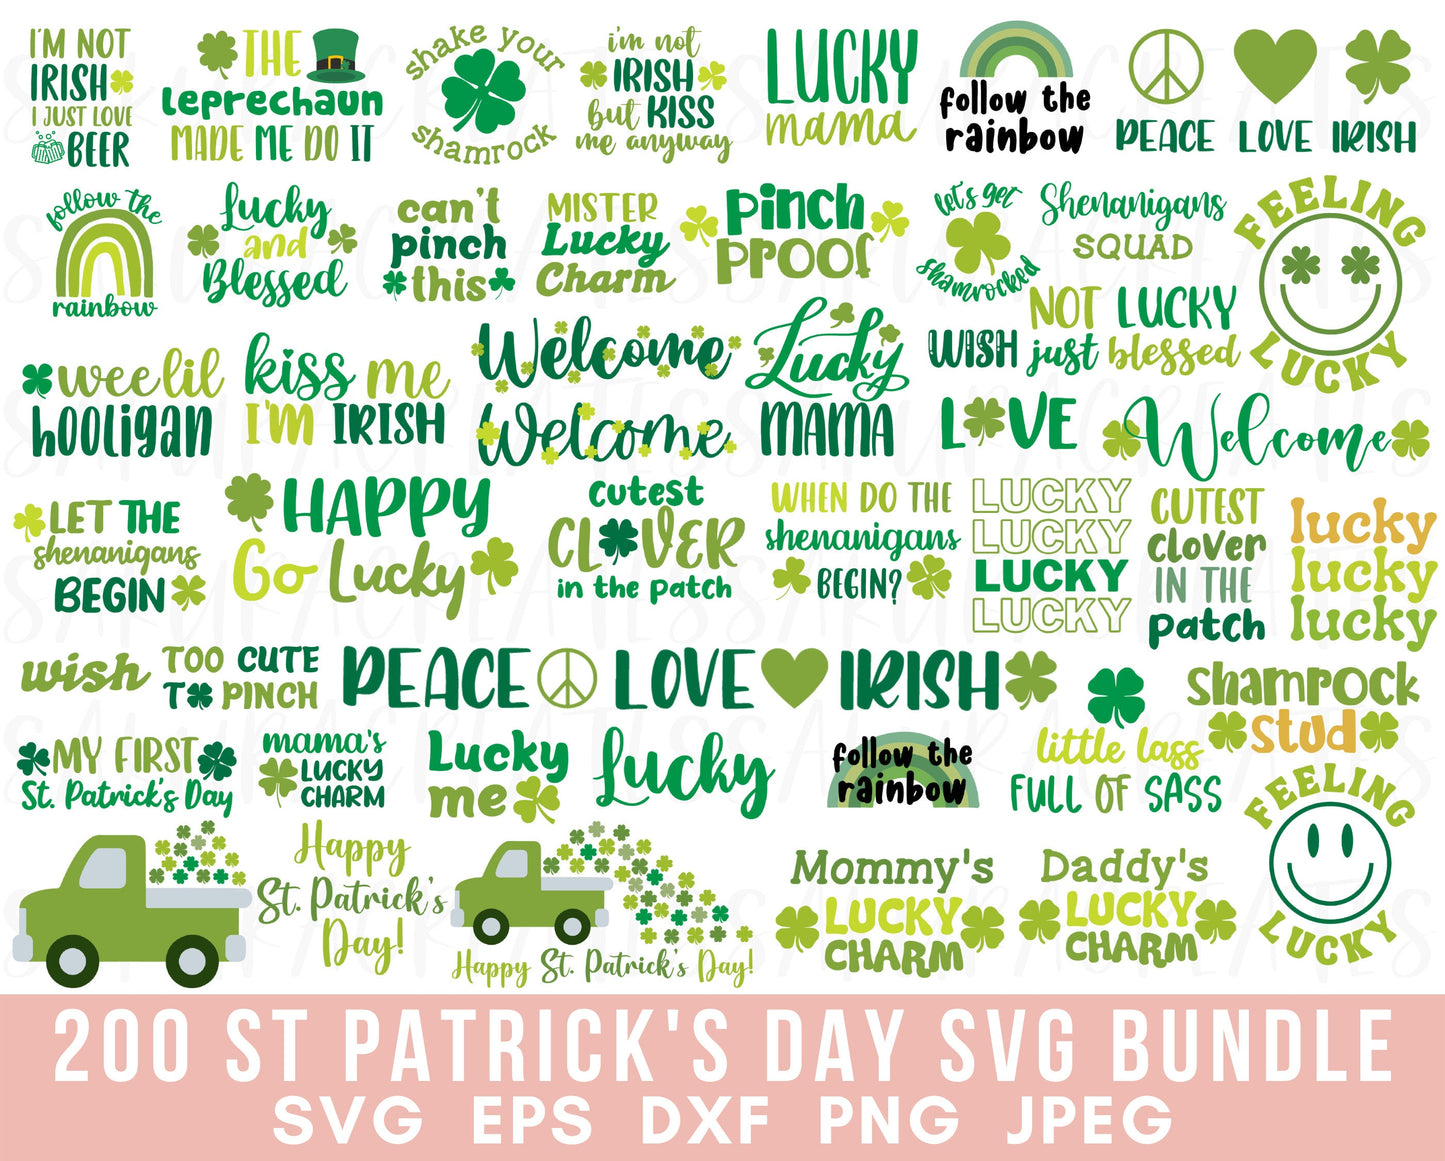 200 St Patricks Day SVG Patricks SVG Saint Patricks Clipart Irish SVG Leprechaun svg Clover svg shamrock lucky svg charm svg file for cricut